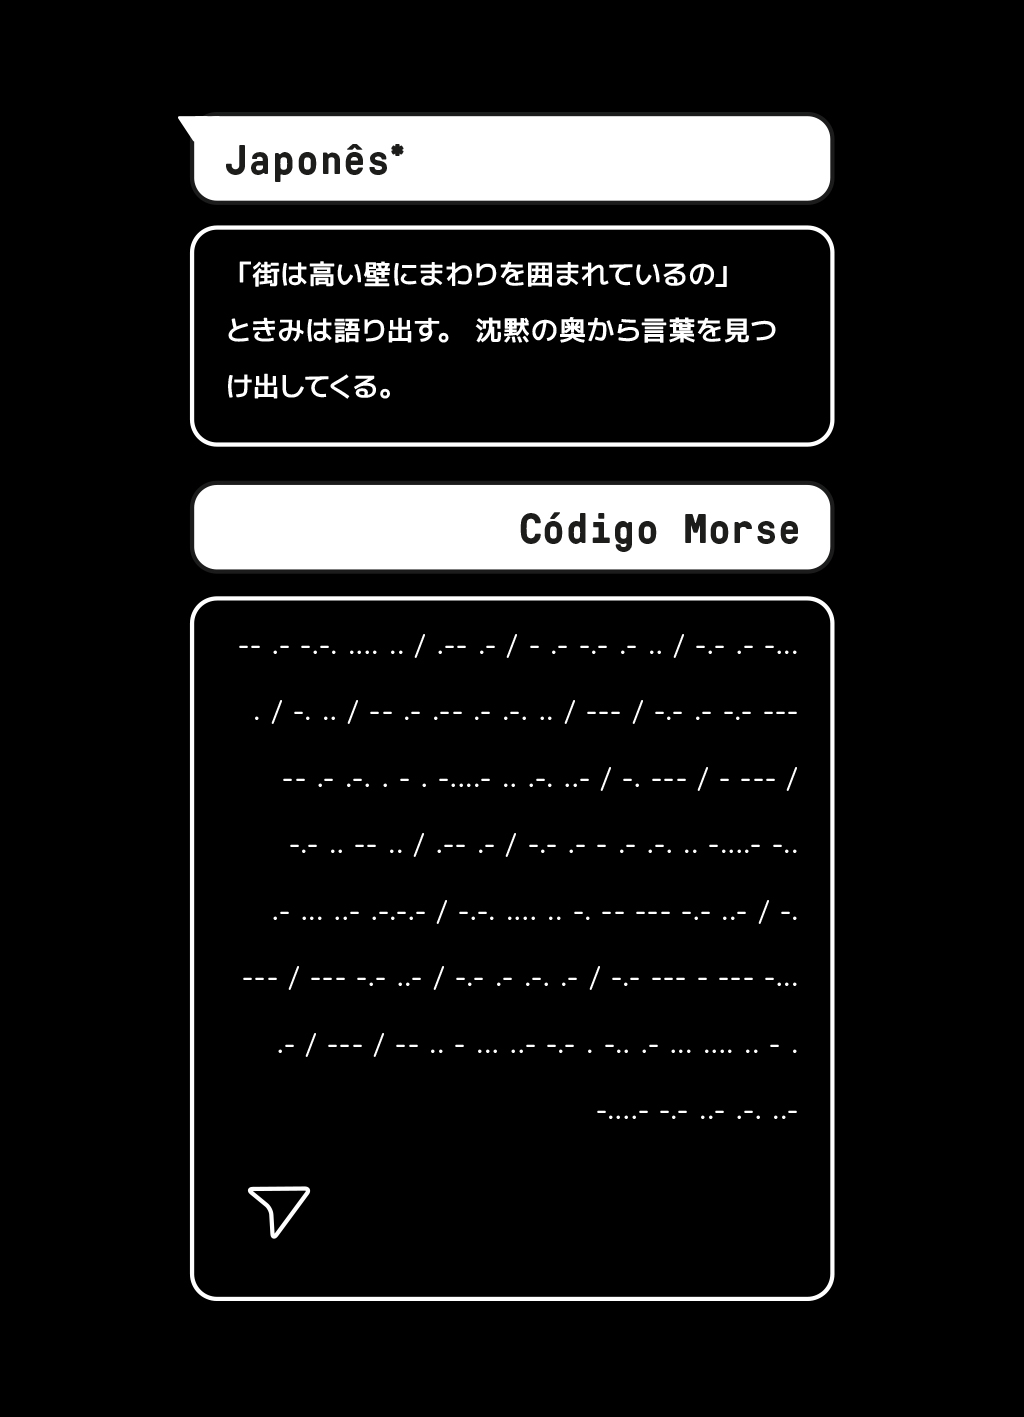 Imagem com balões de tradução da mesma mensagem em japonês e em código Morse.